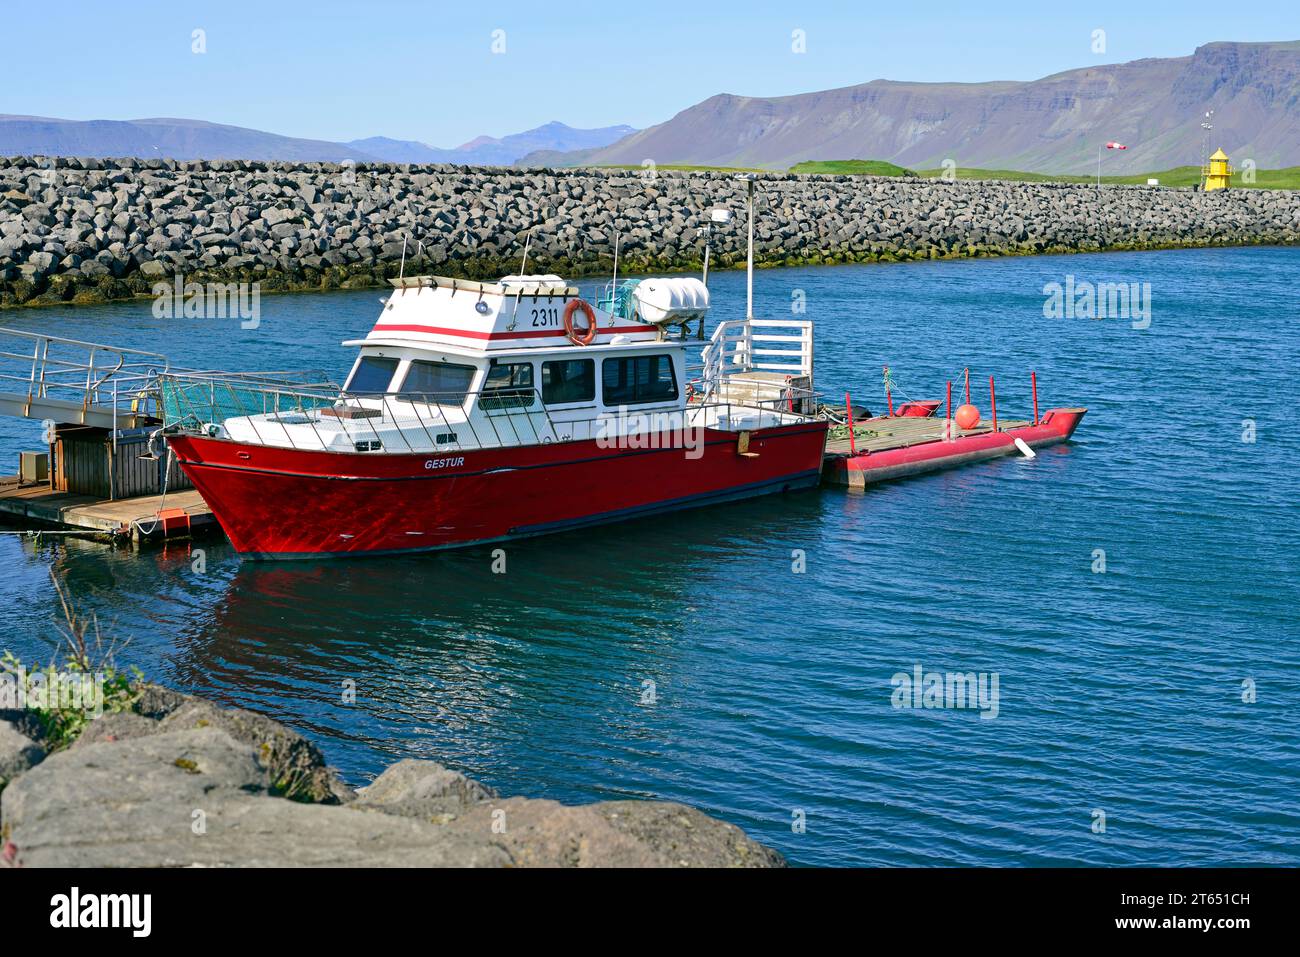 Das kleinere der beiden Videy Island Ferry Boote, Gestur, wird am Pier neben dem Kreuzfahrthafen in Reykjavik Island gesichtet. Stockfoto